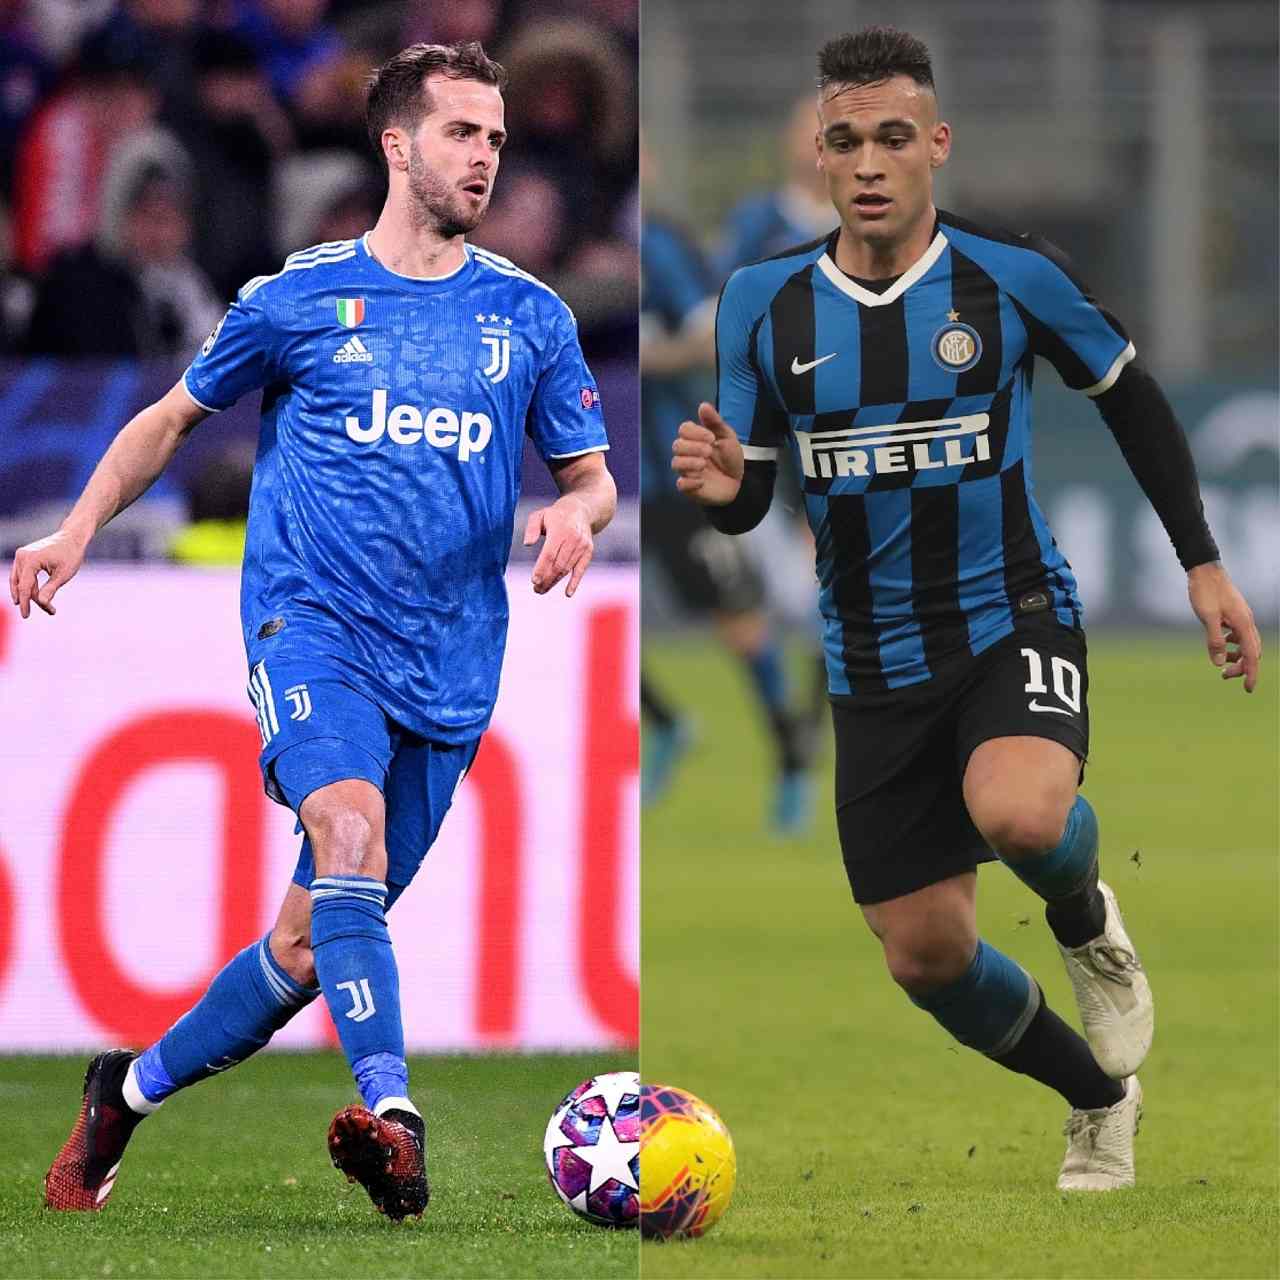 Calciomercato Inter, Juventus, Barcellona: trattative per Lautaro Martinez, Pjanic, Arthur